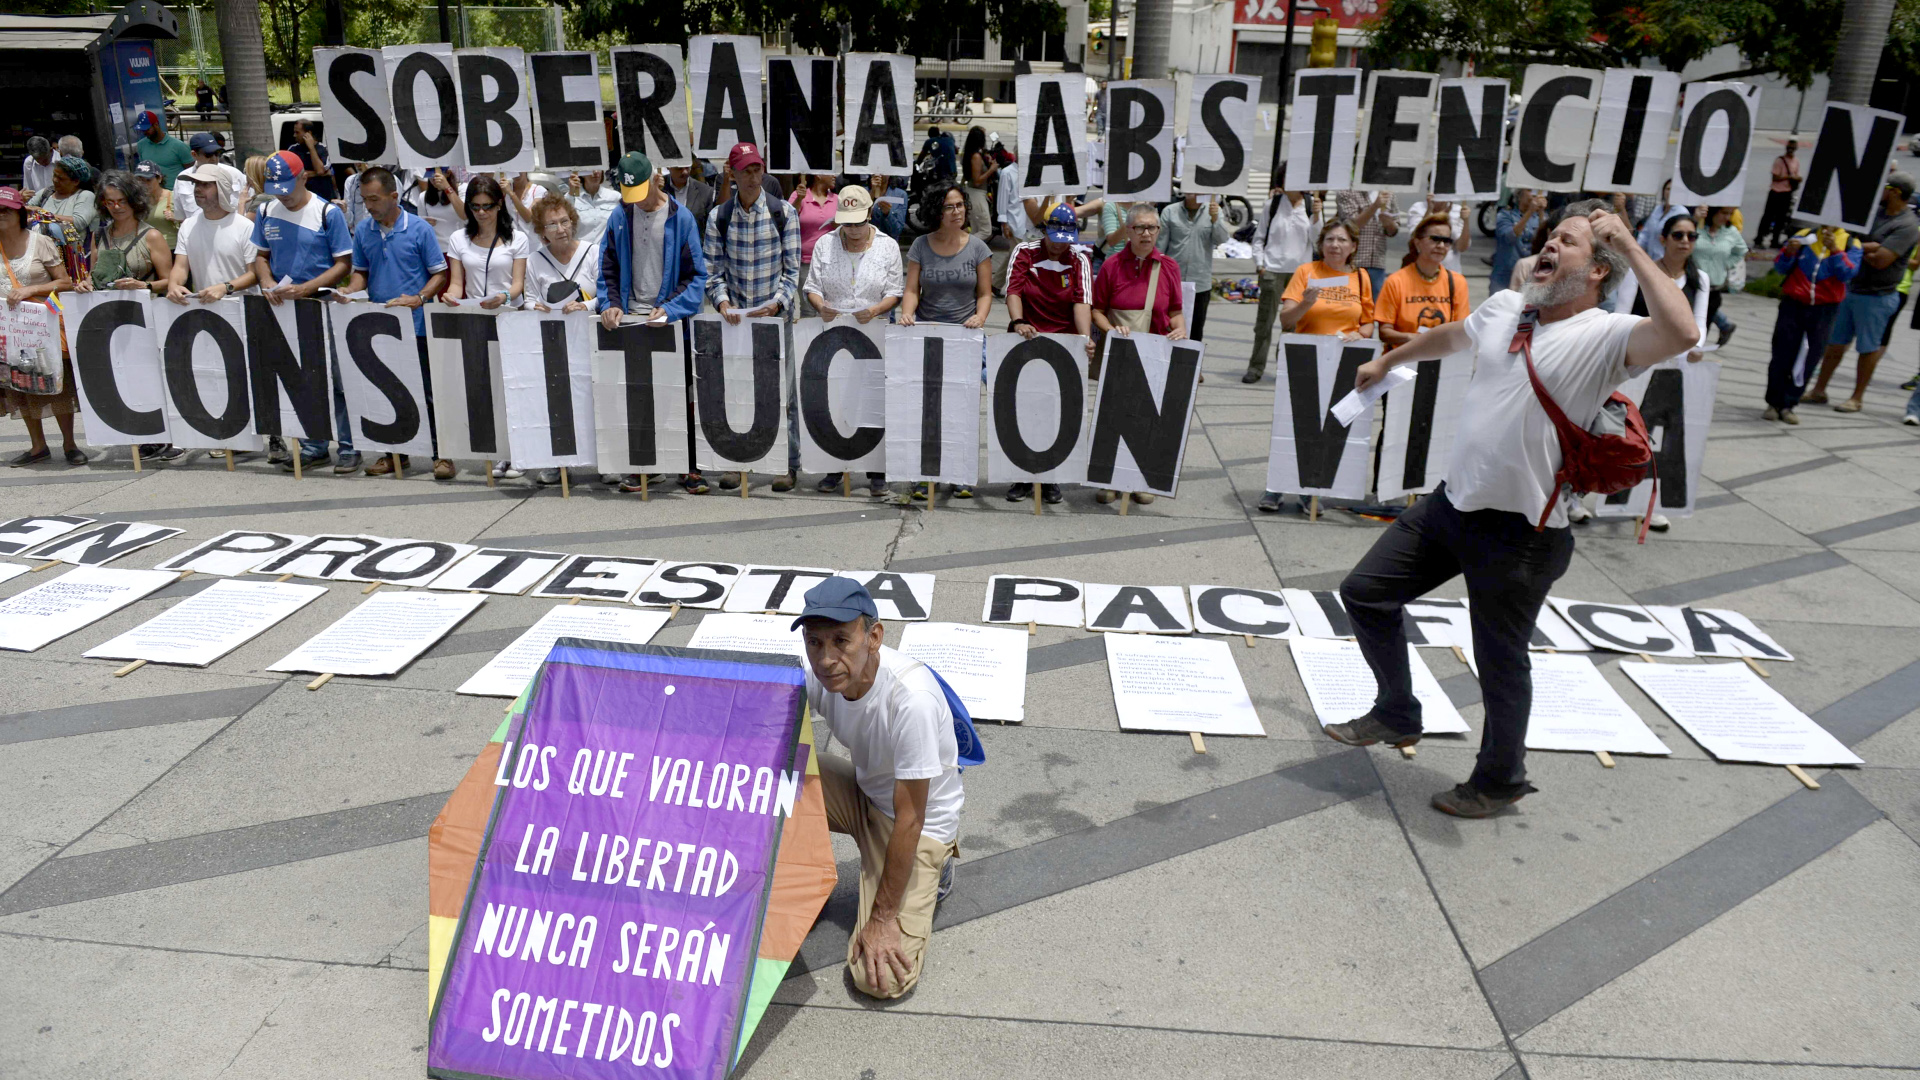 Proteste gegen verfassungsgebende Versammlung in Venezuela | AFP